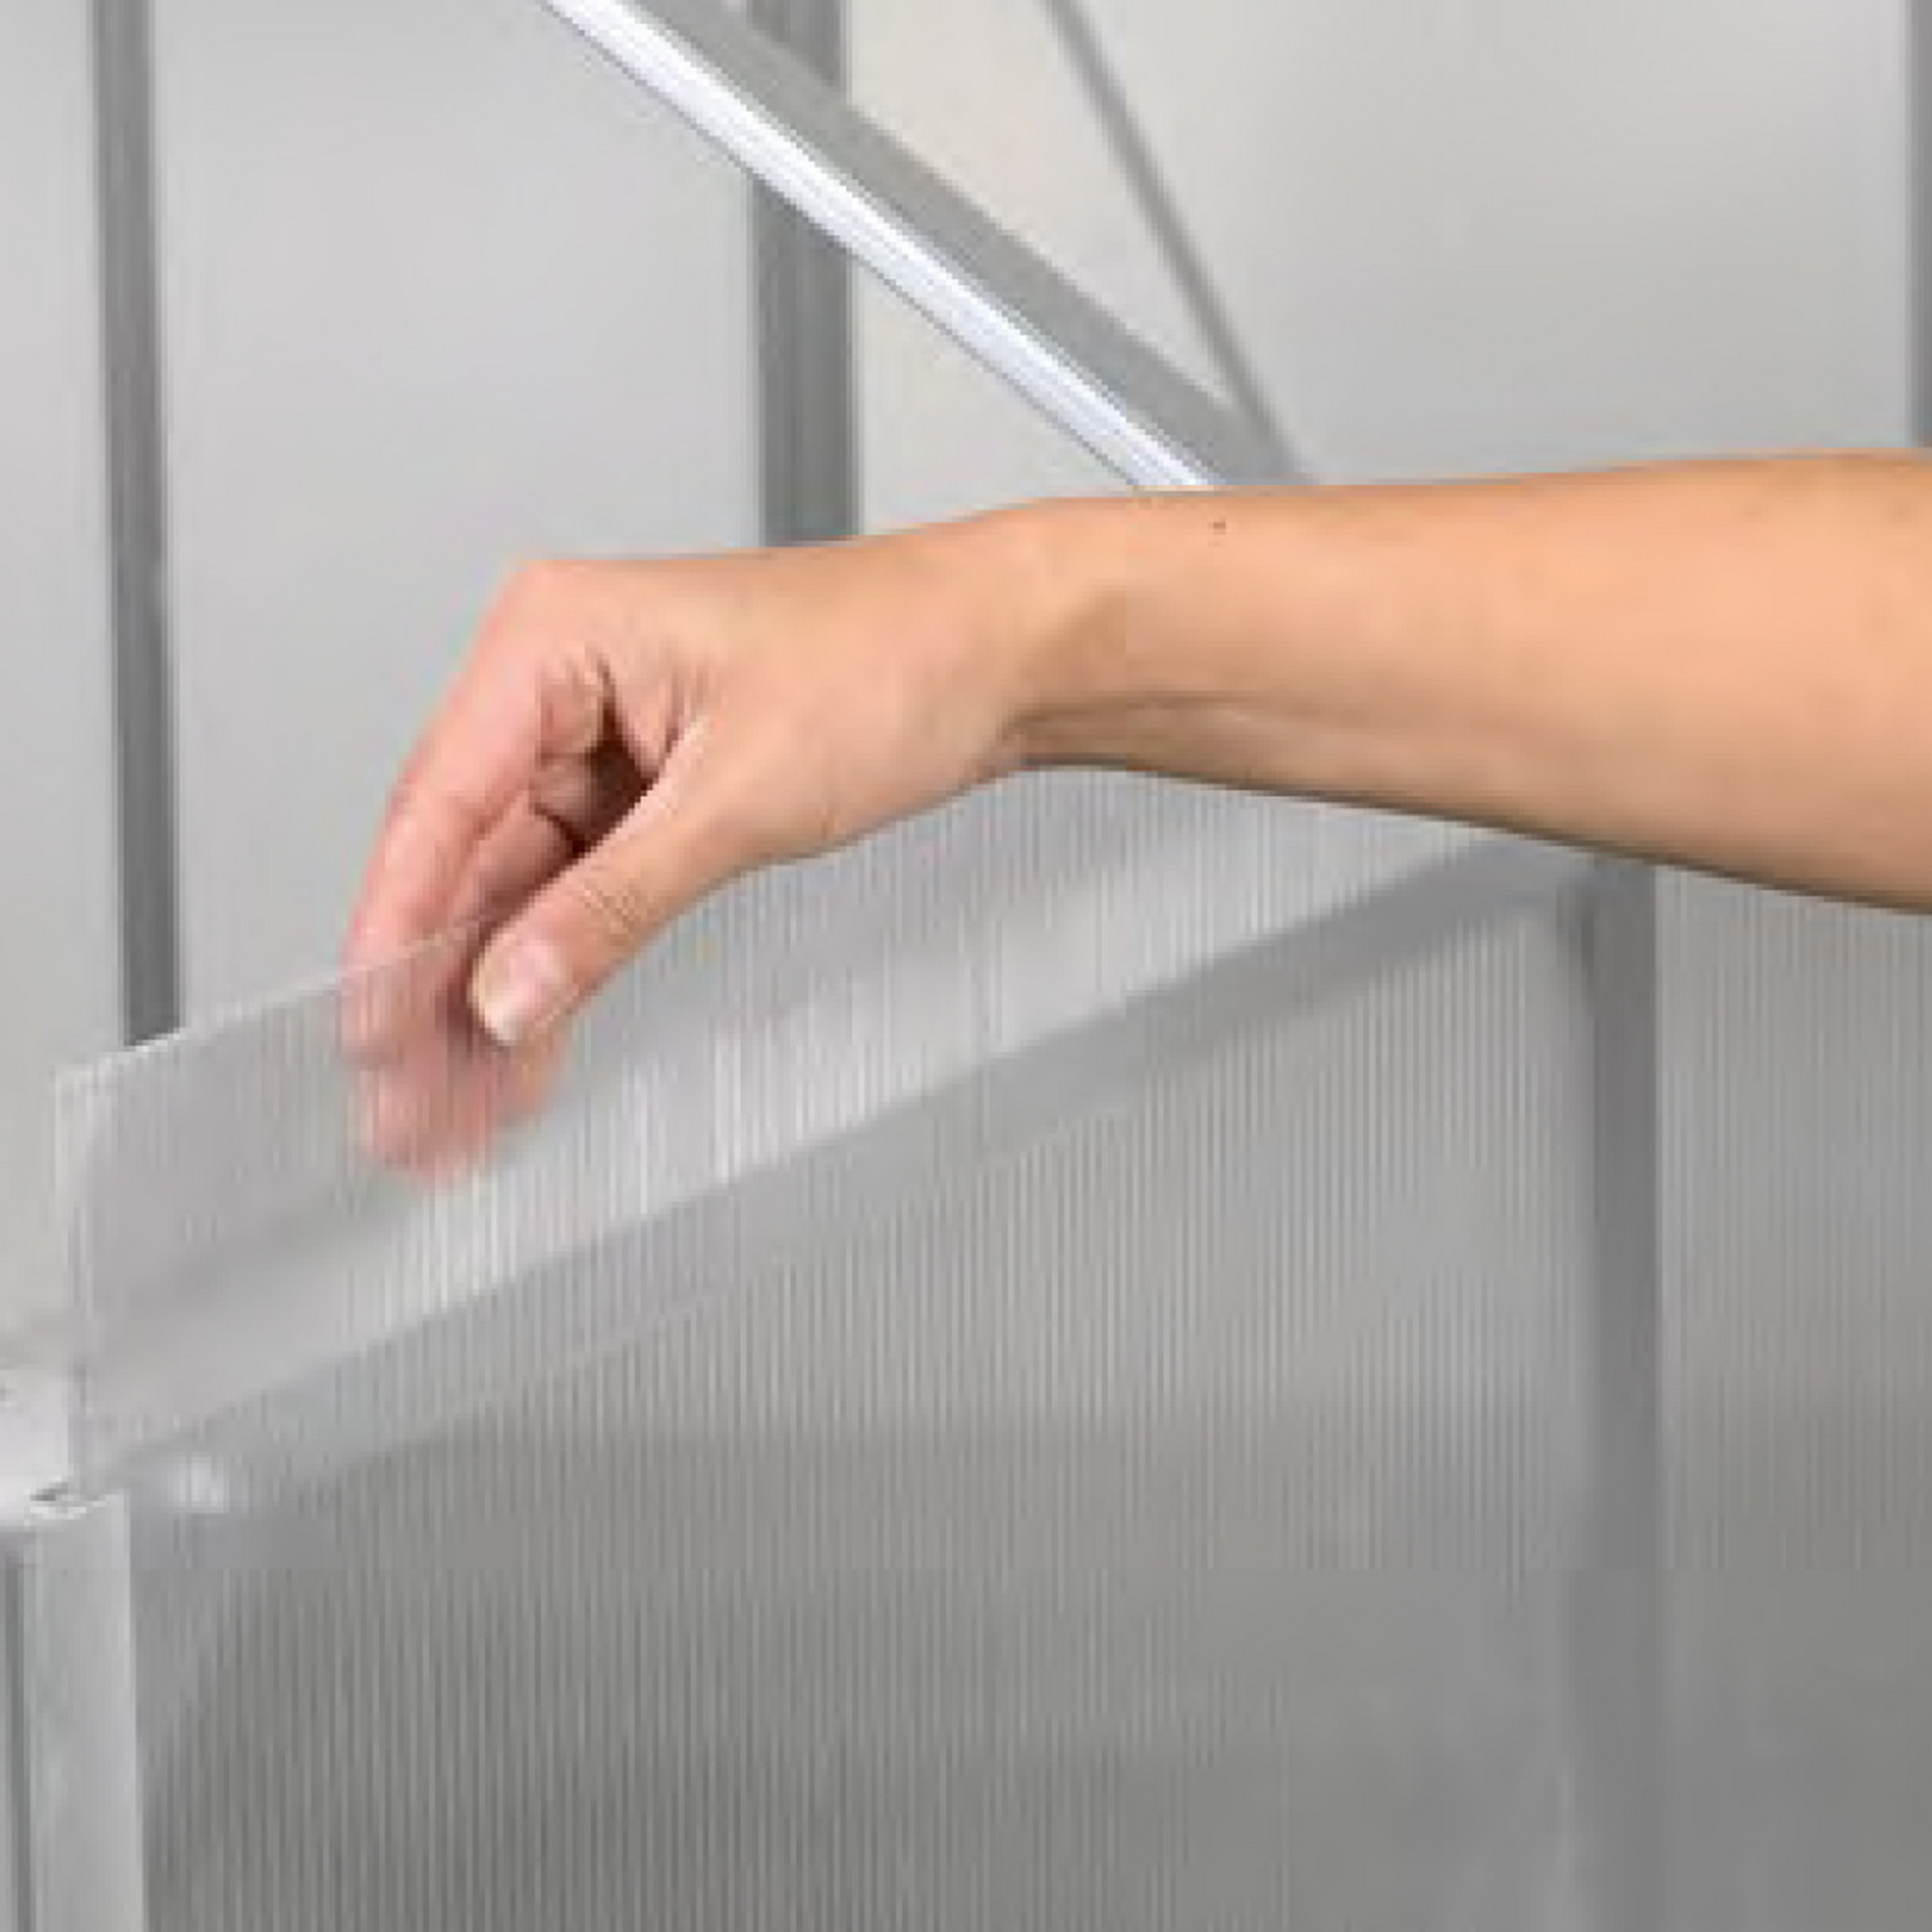 Hohlkammerplatten Gewächshaus 'Ergänzungsset 6' transparent 4 mm, 23-teilig + product picture